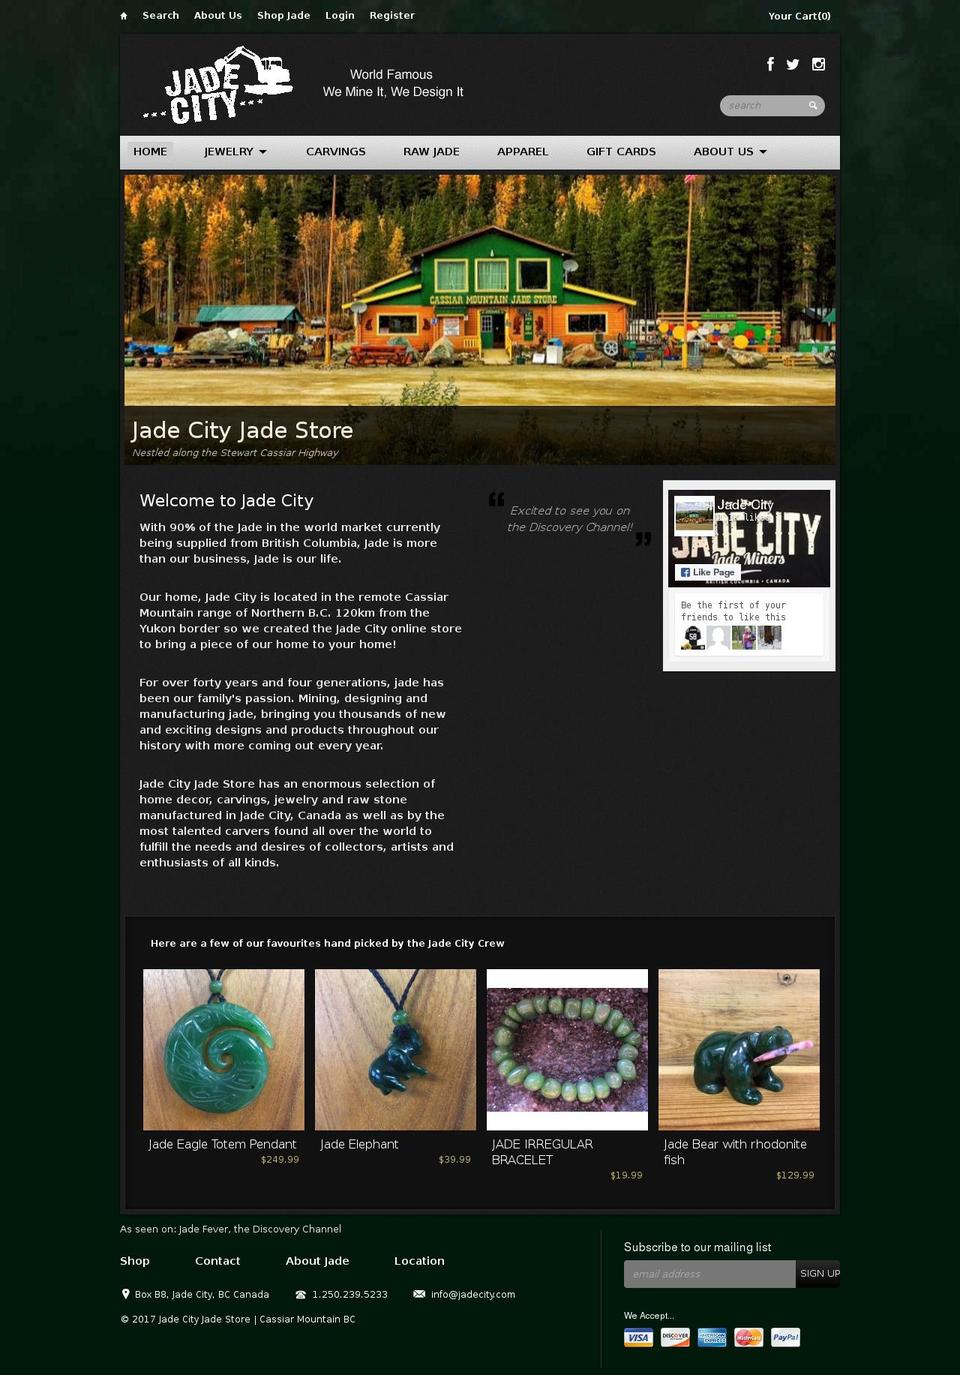 Reign Shopify theme site example jadecity.com